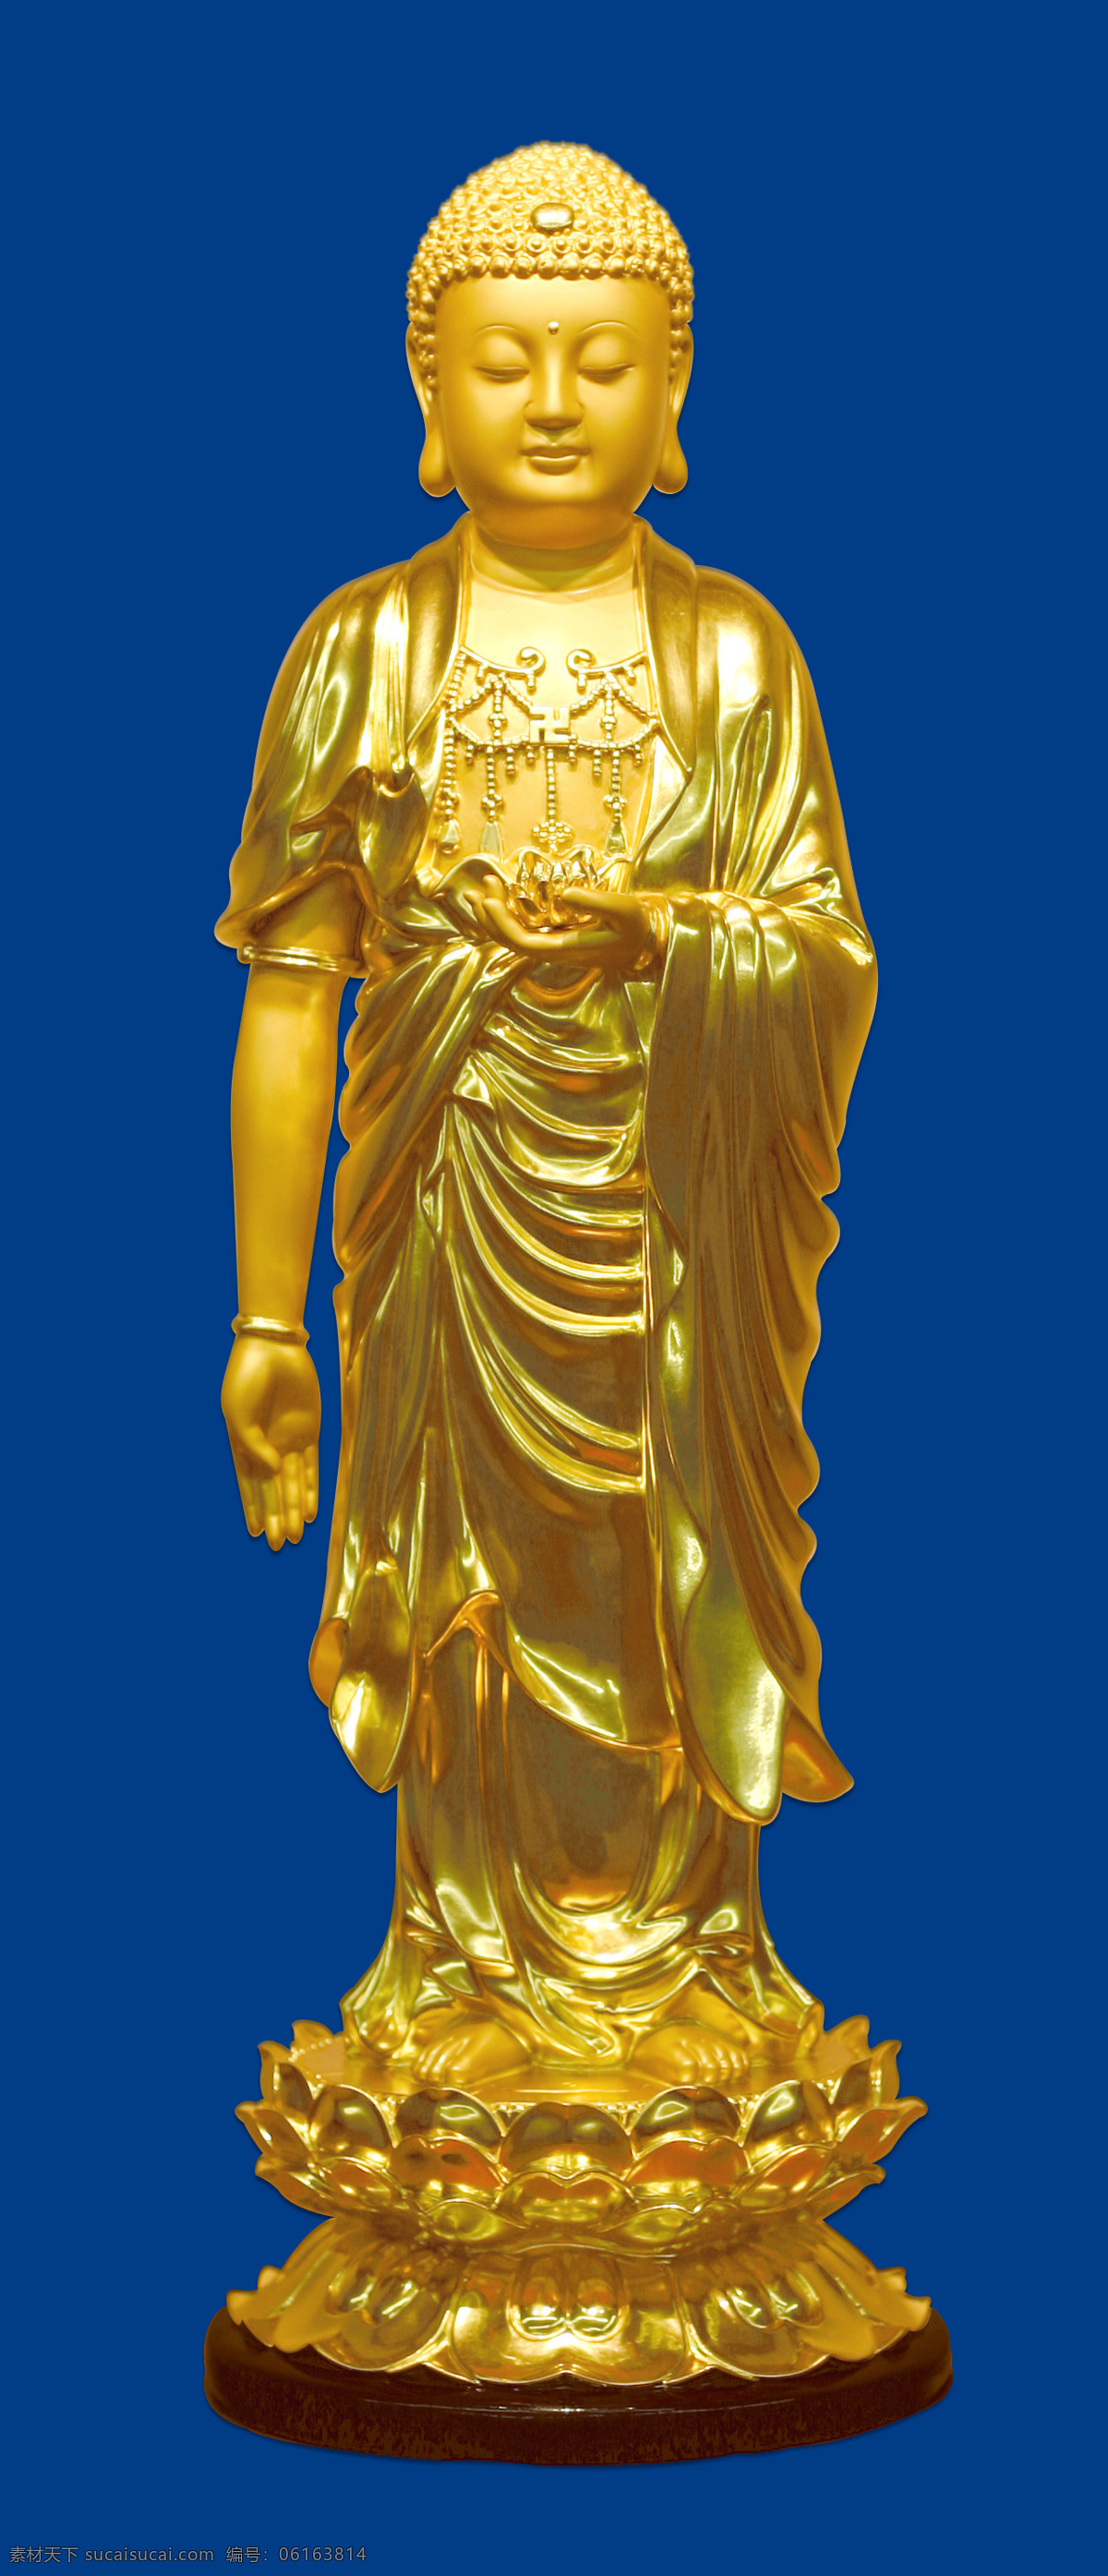 金佛 单色背景 高清 金佛像 清晰 文化艺术 宗教信仰 金色佛像